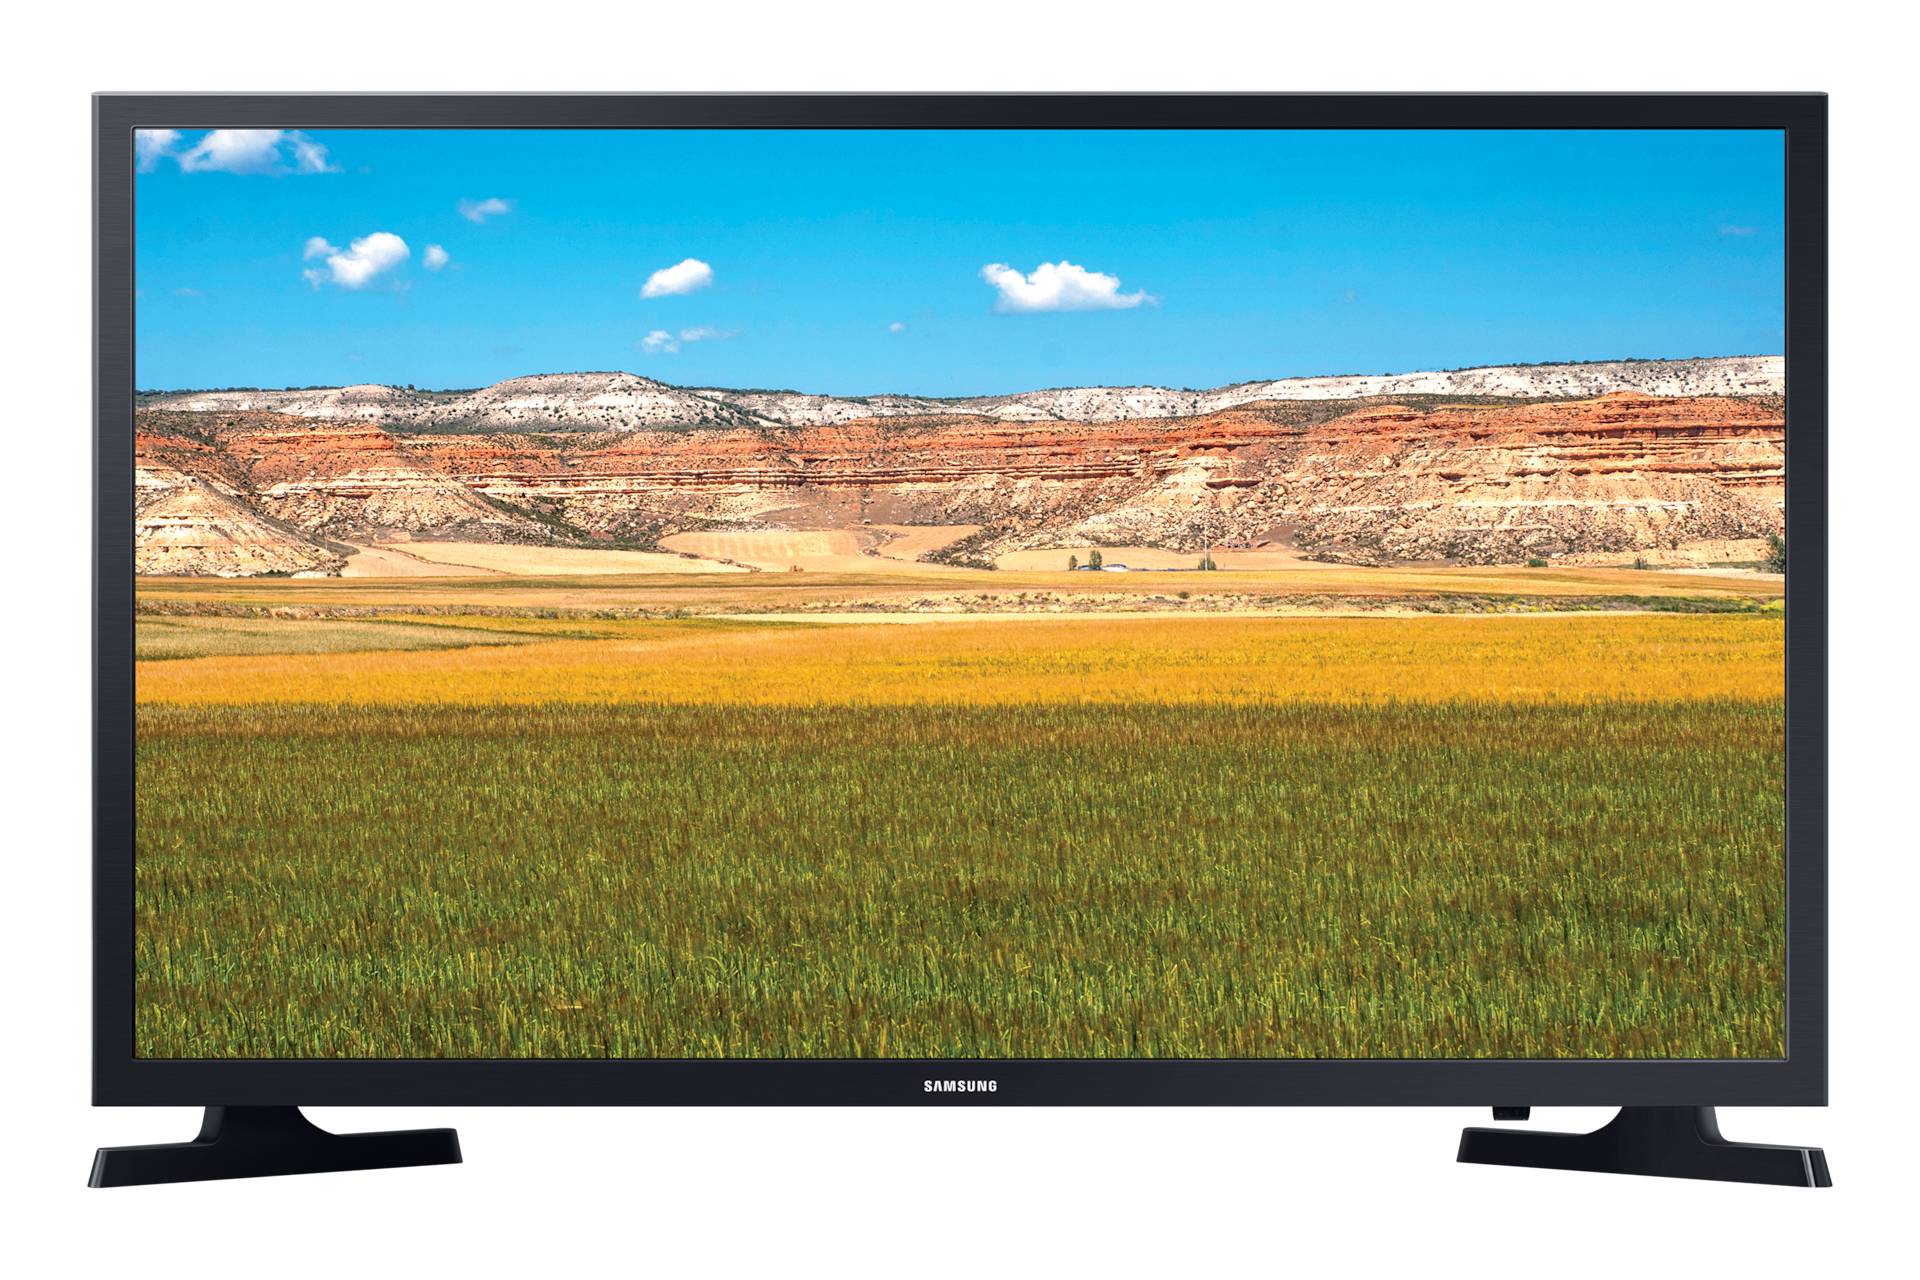 Smart TV HD 32 T4300